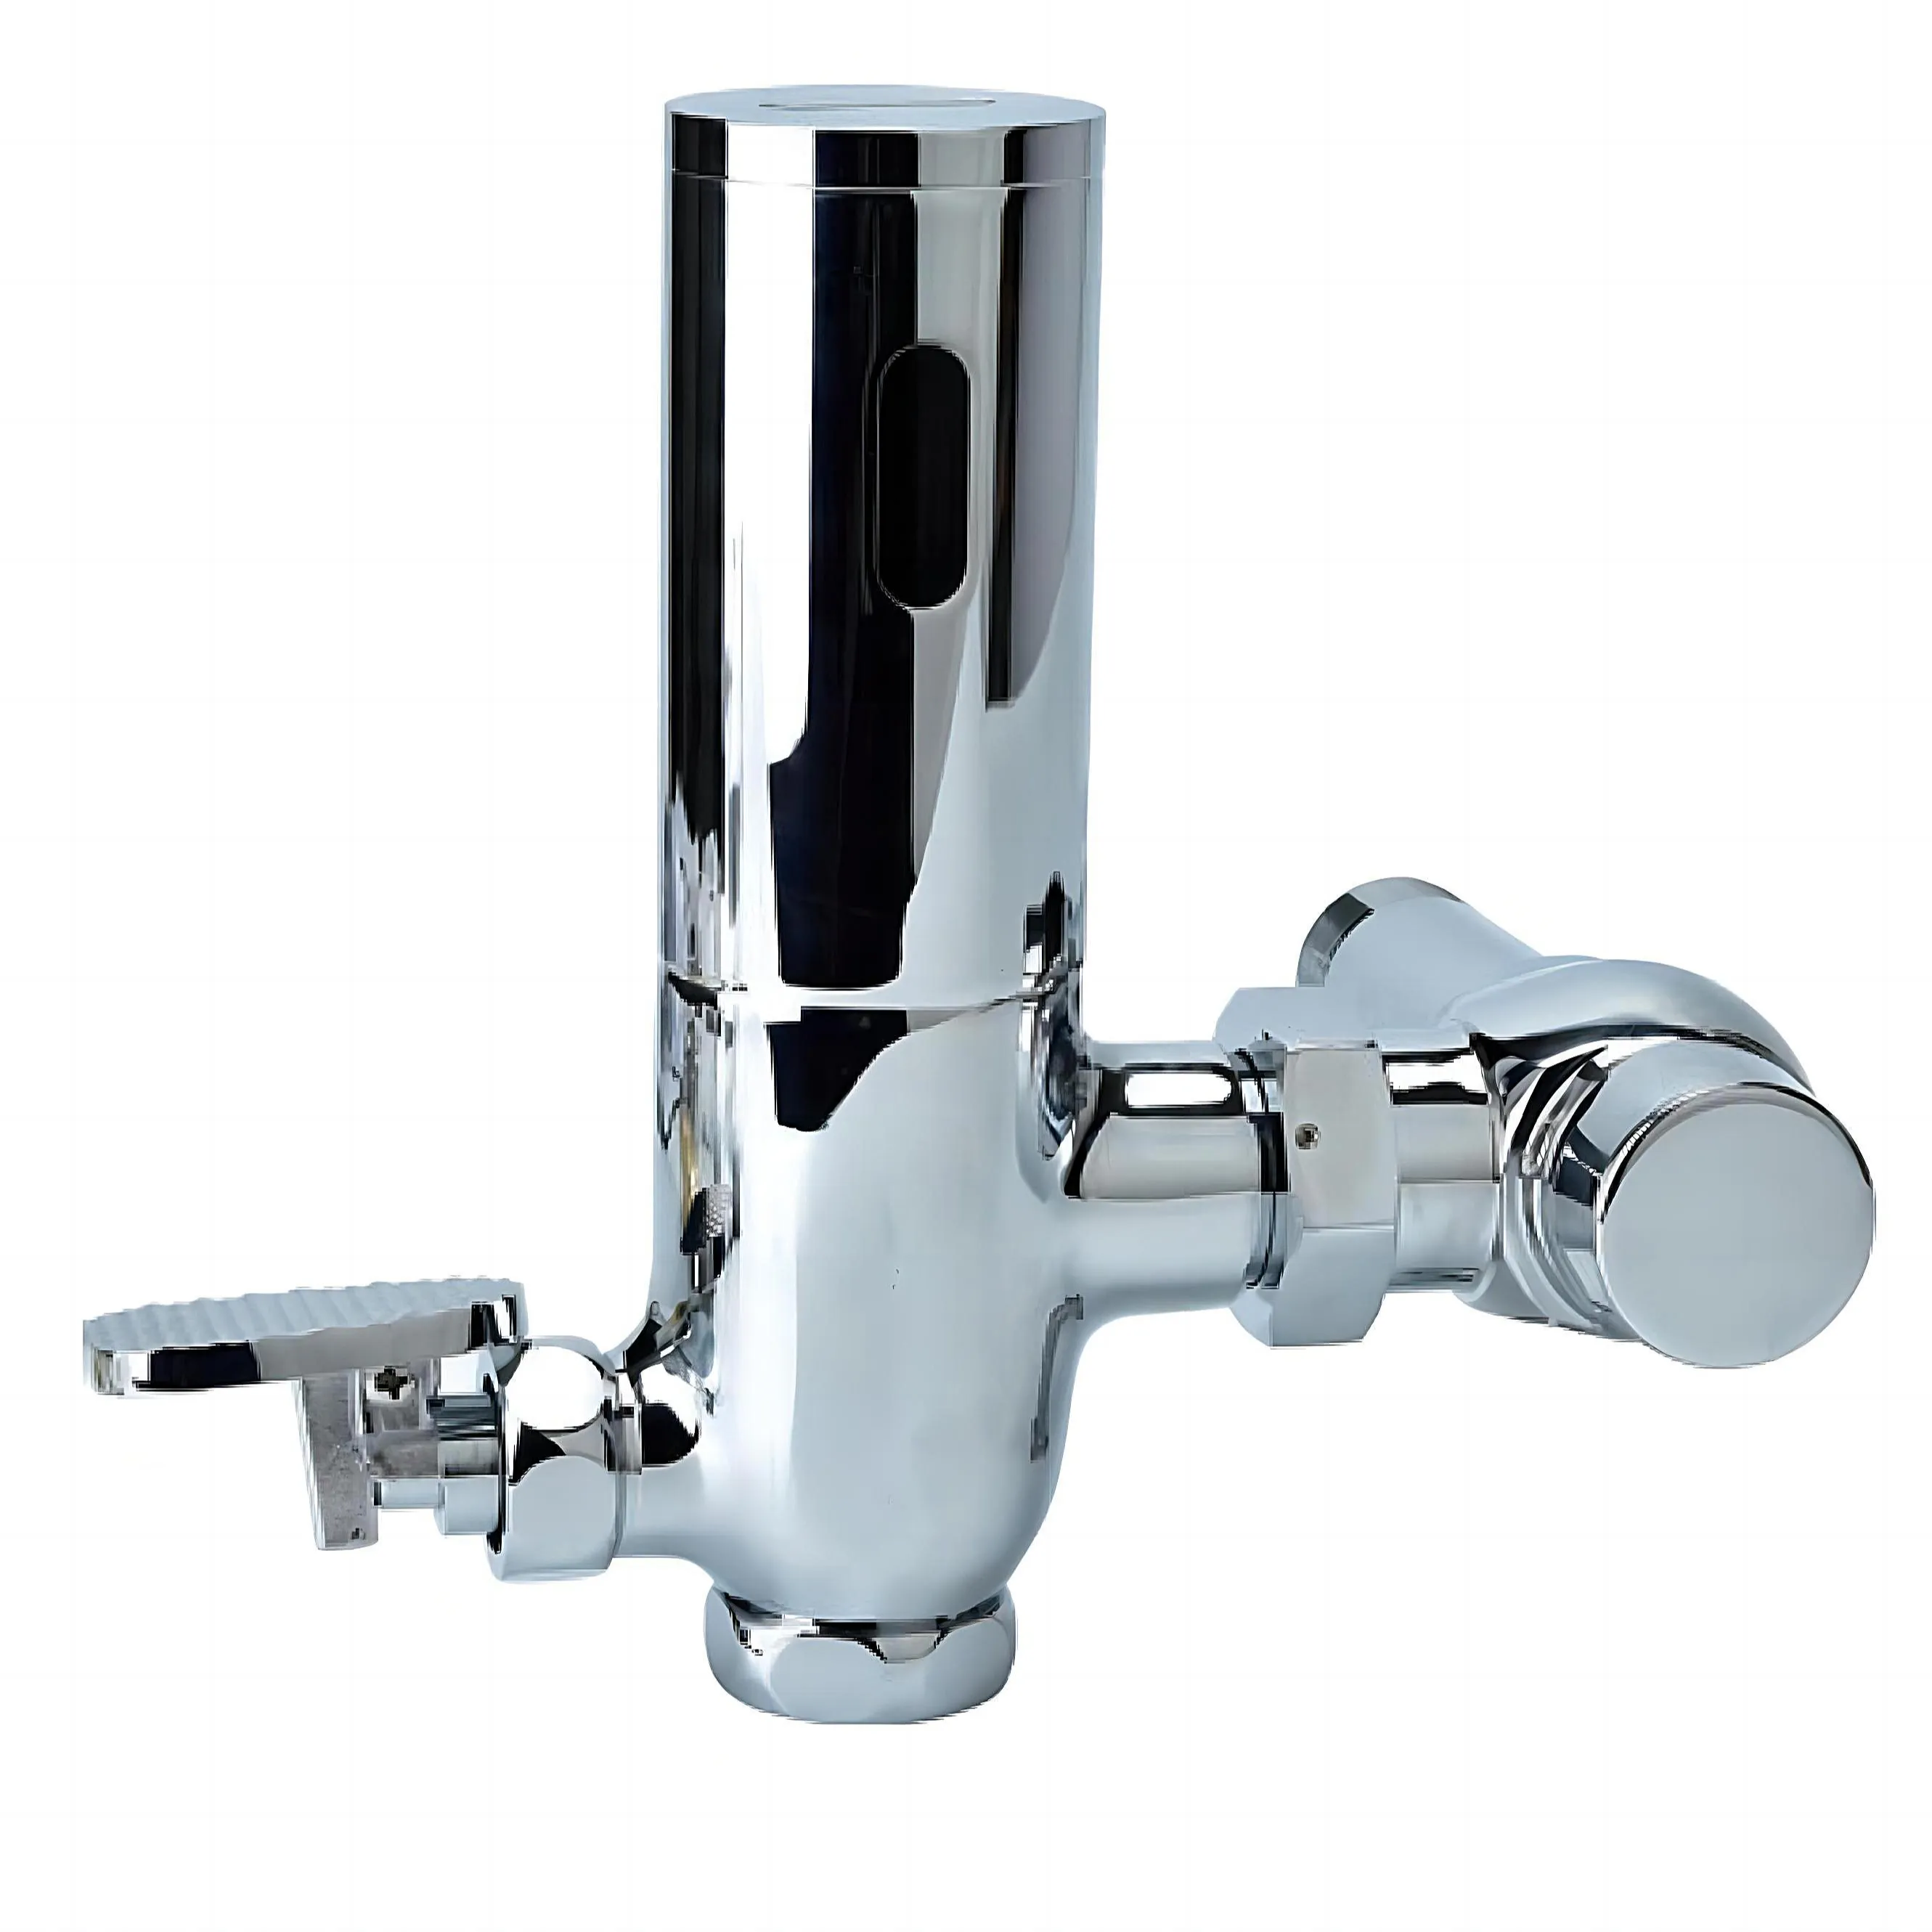 Infrared Sensor Automatic Flushing Stool Sensor Squat/Bidet Auto Toilet Pedal Flush Valve